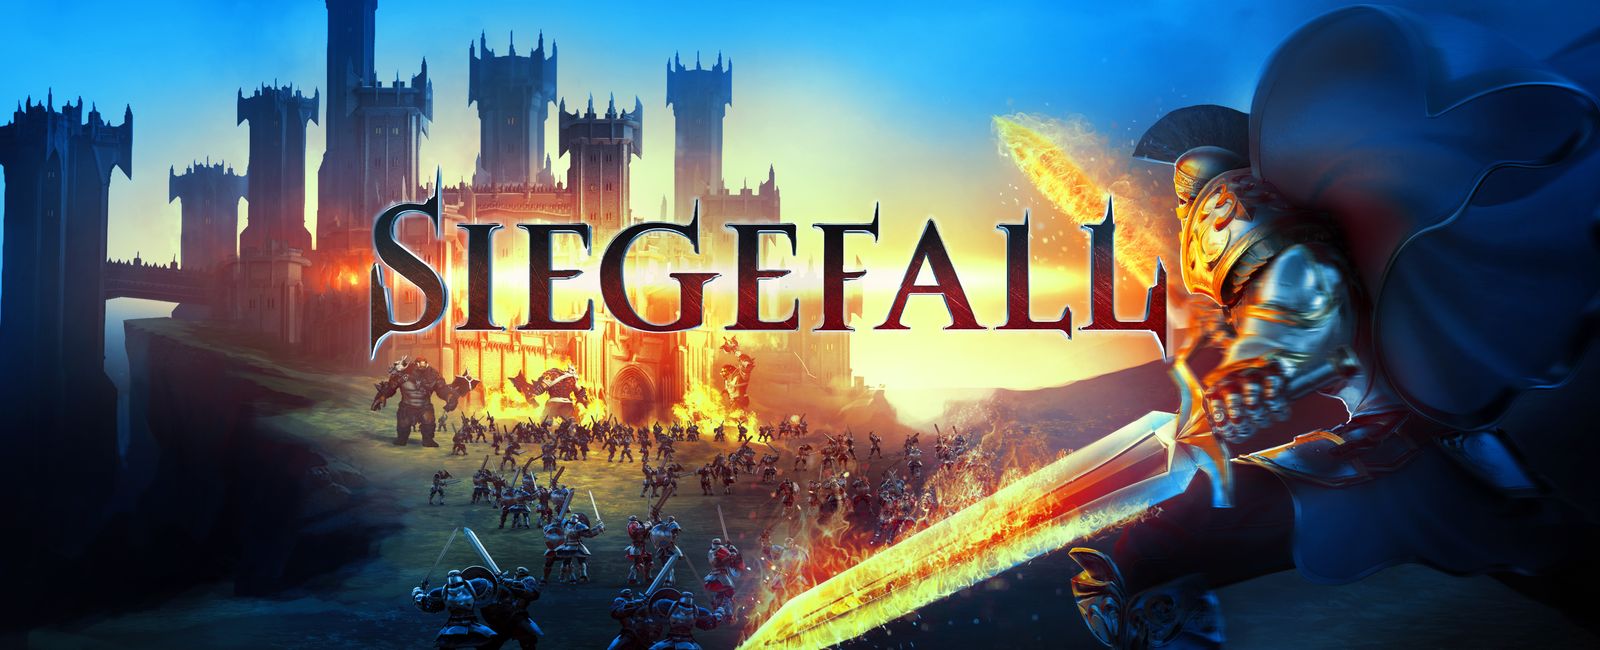 Siegefall, un nouveau clone de Clash of Clans, est disponible sur le Play Store